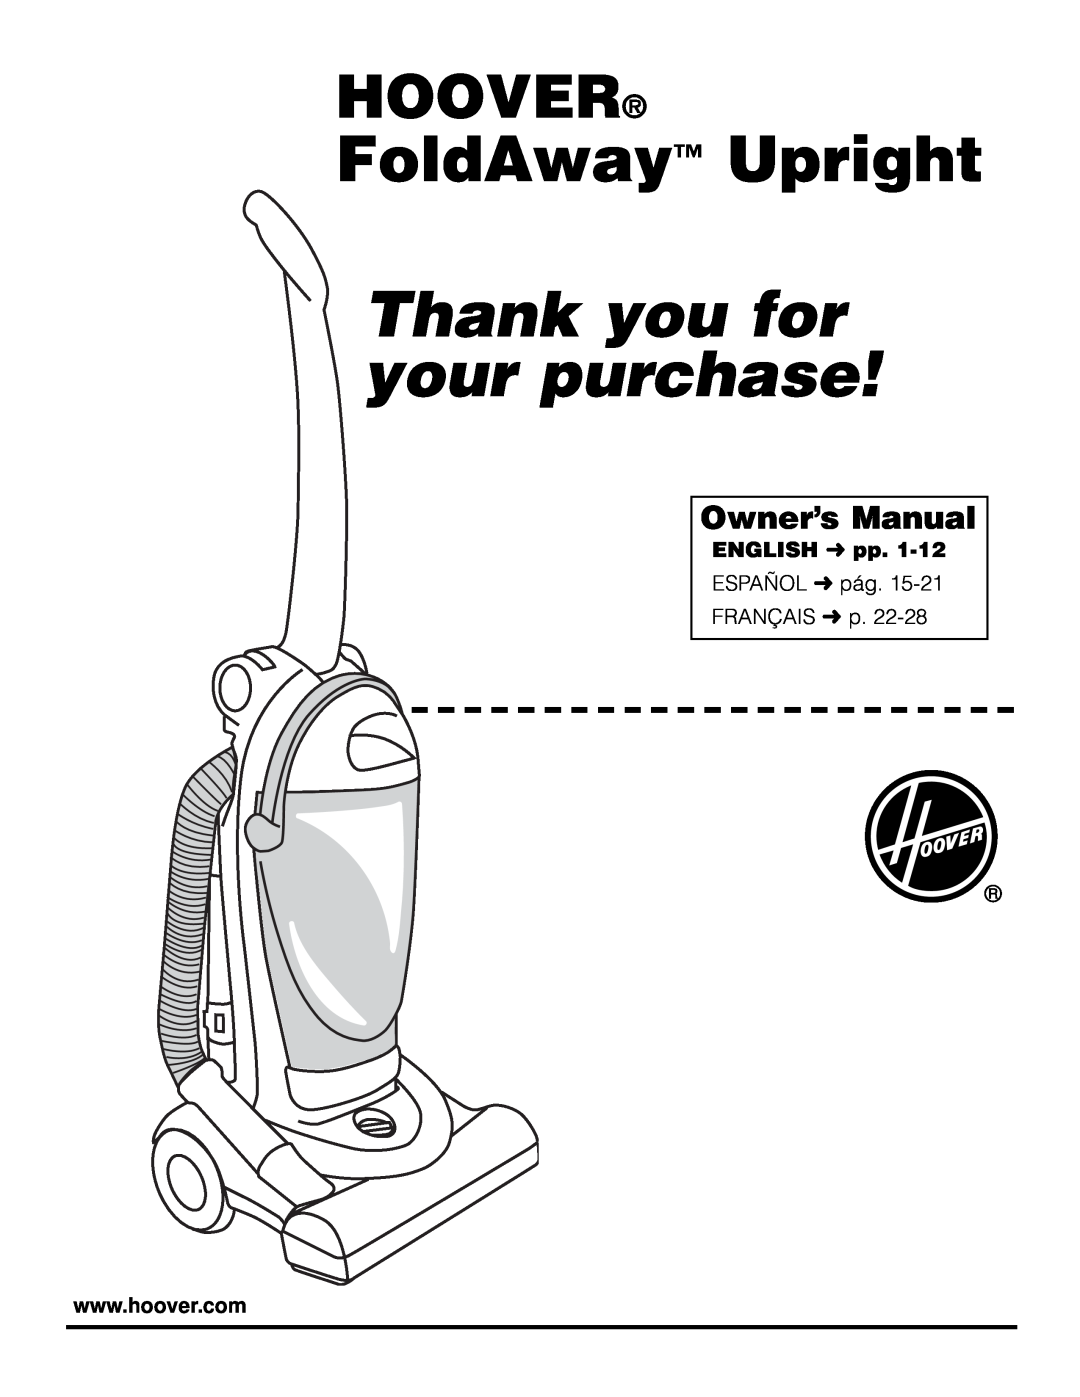 Hoover FoldAwayTM Upright owner manual Owner’s Manual, FoldAway Upright, Thank you for your purchase, Hoover, ENGLISH pp 